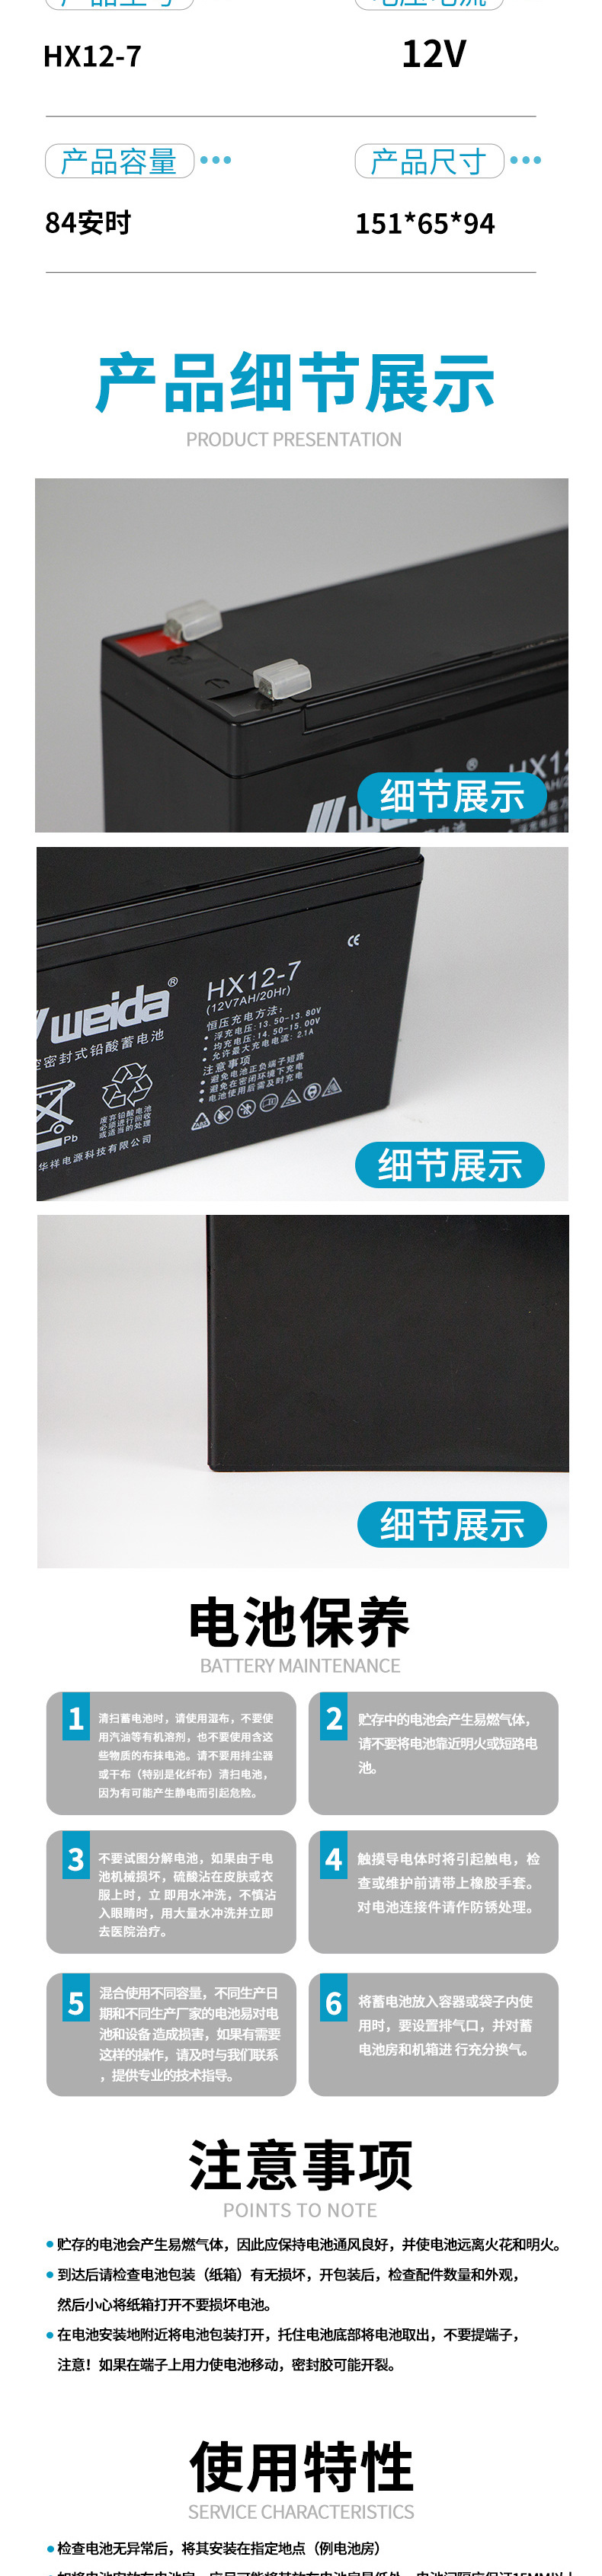 WEIDA HX12-7 12V系列阀控密封式铅酸蓄免维护电池  储能电池 